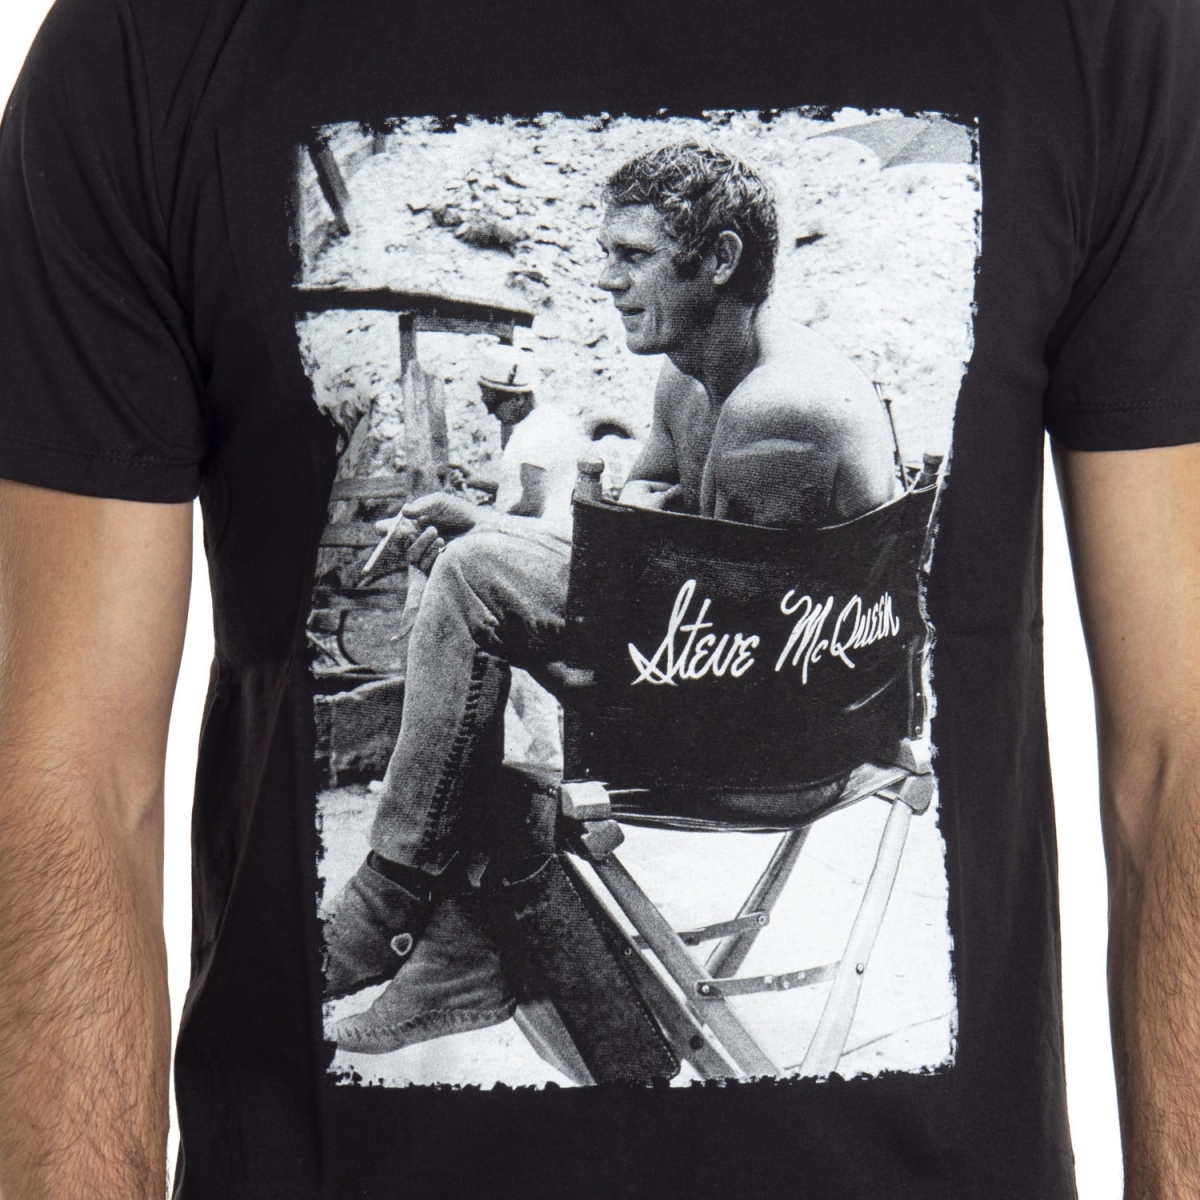 Kleidung T-shirt mann T-Shirt LPX16-35 LANDEK PARK Cafedelmar Shop